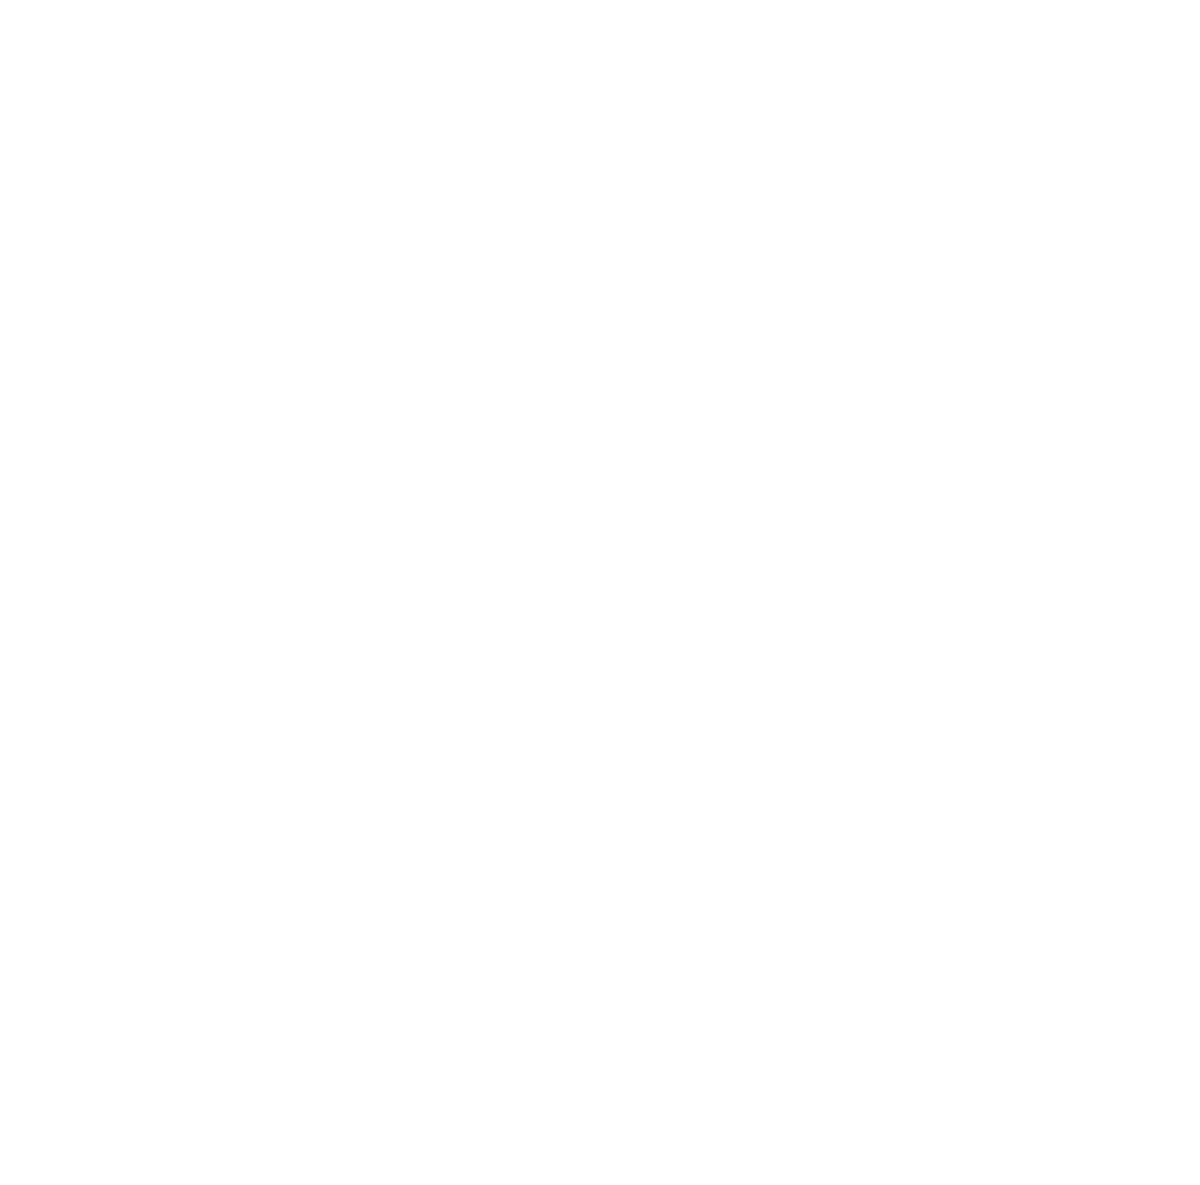 858-8583536_redbull-red-bull-logo-black-and-white